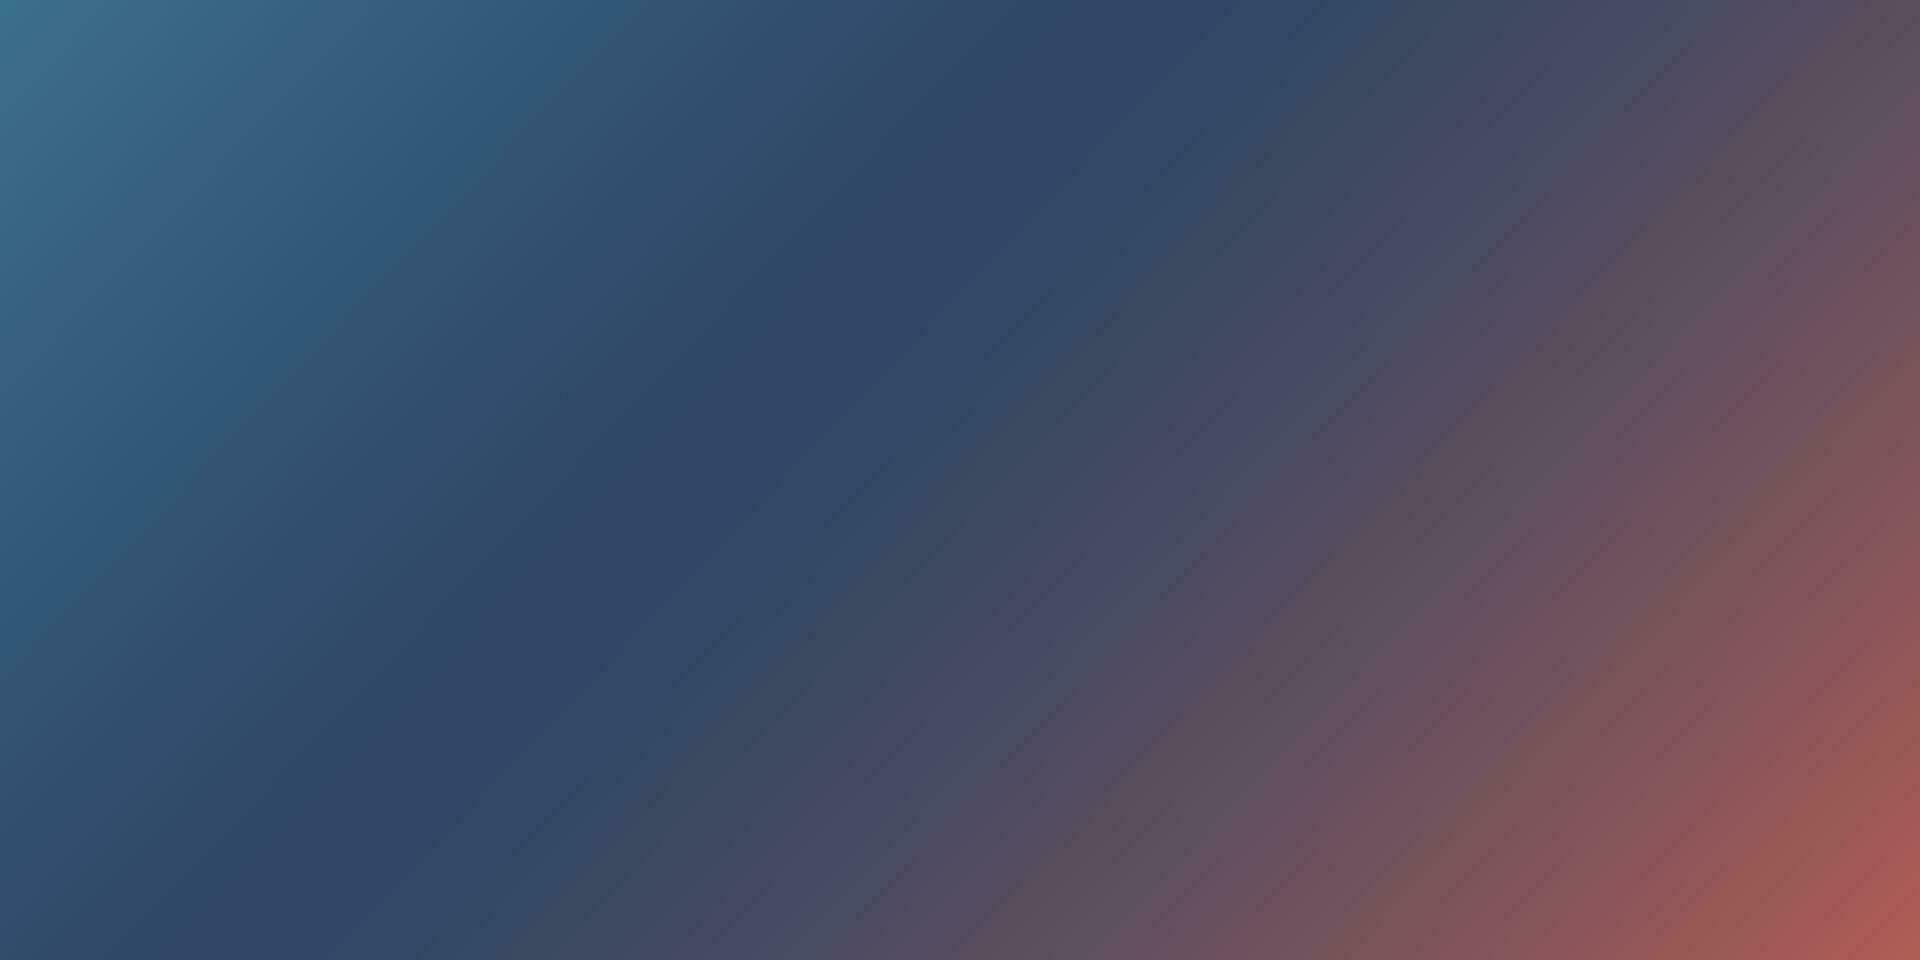 helling blauw, rood, en roze abstract achtergrond, abstract achtergrond concept voor banier en achtergrond, vector illustratie